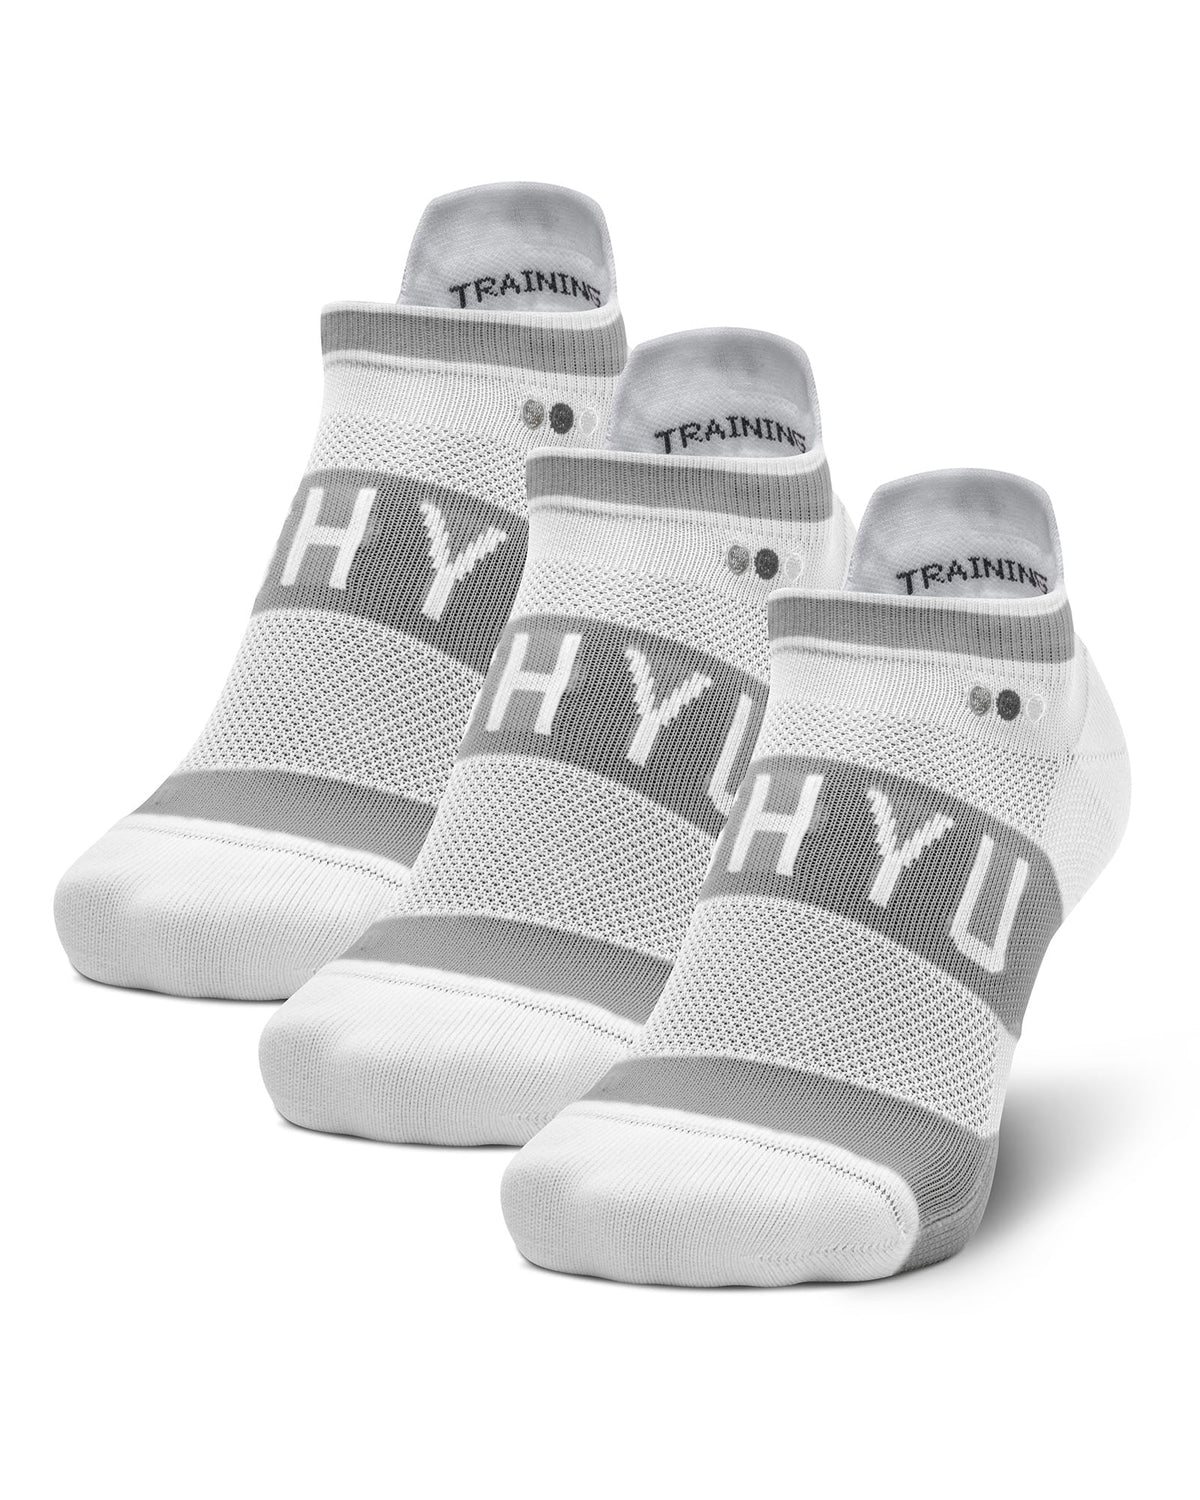 SHYU training socks - 3 pack (no-show tabs)